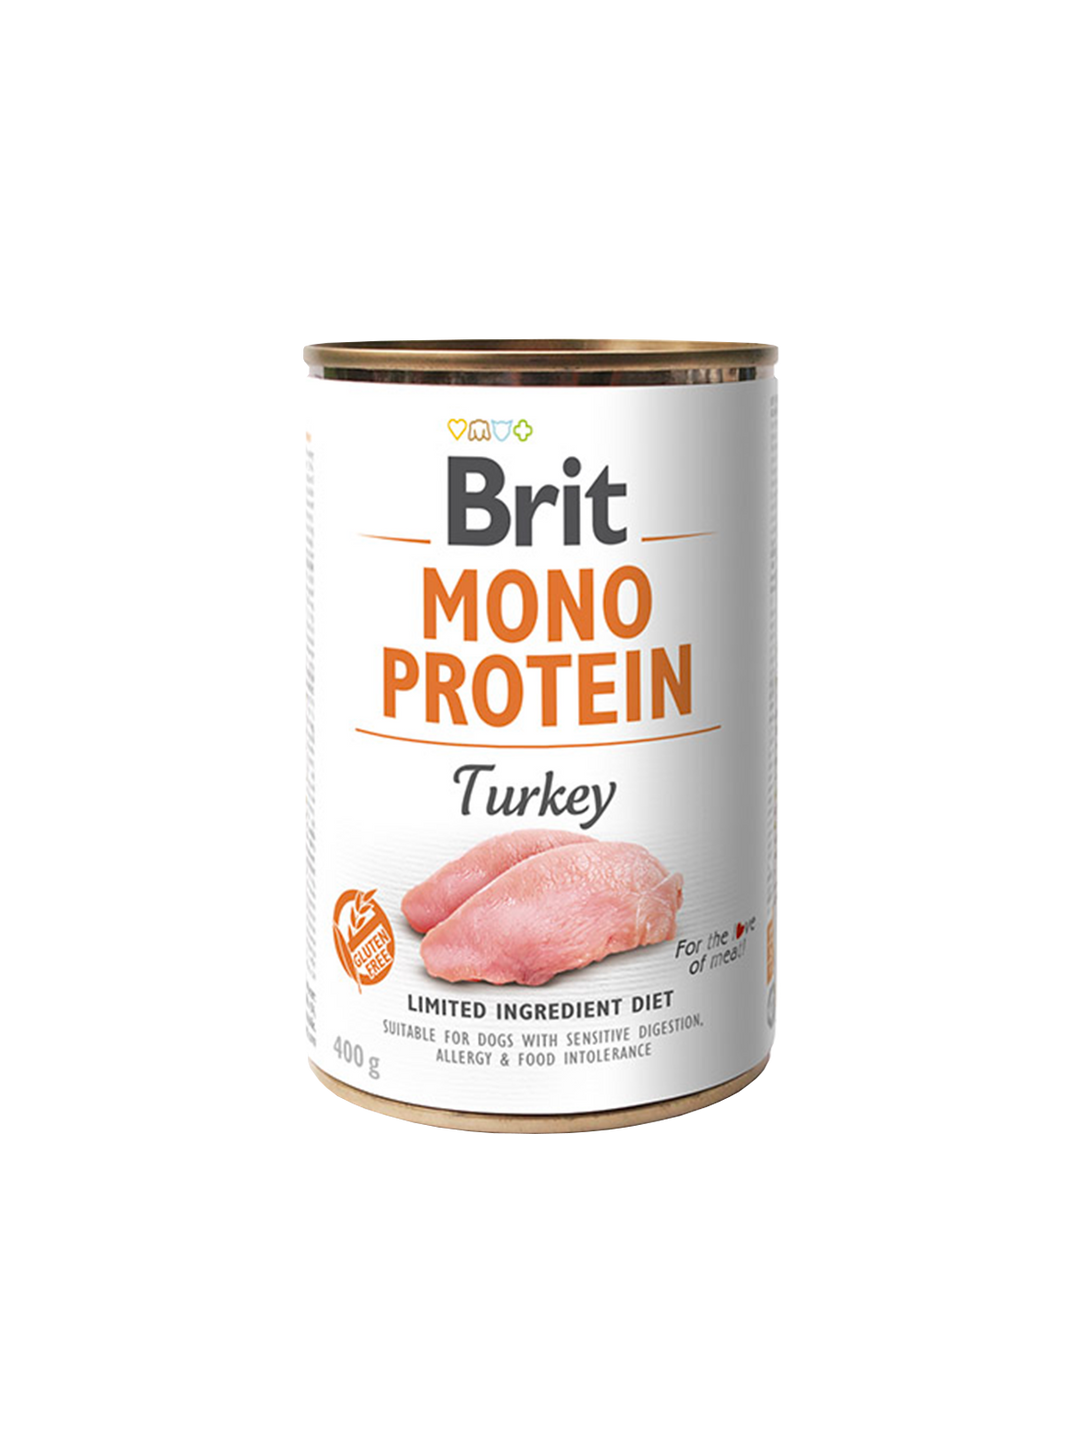 Brit Mono Protein tins 400g - Turkey